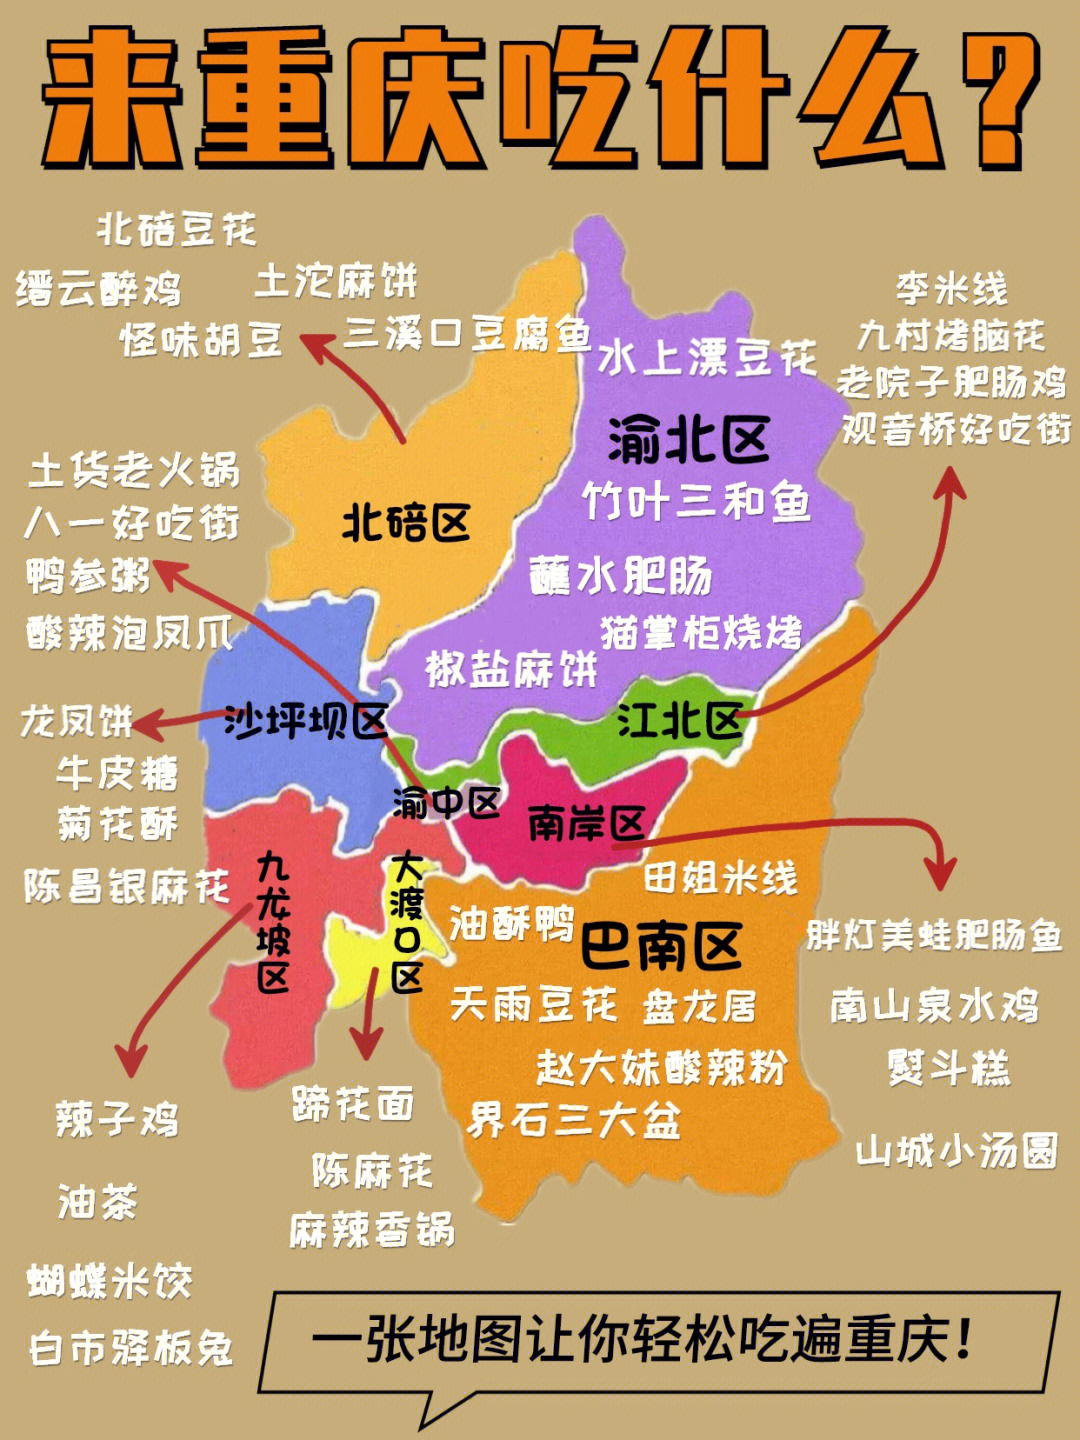 重庆各大区美食合集,满满92都是干货,一张地图让你轻轻松松吃遍重庆